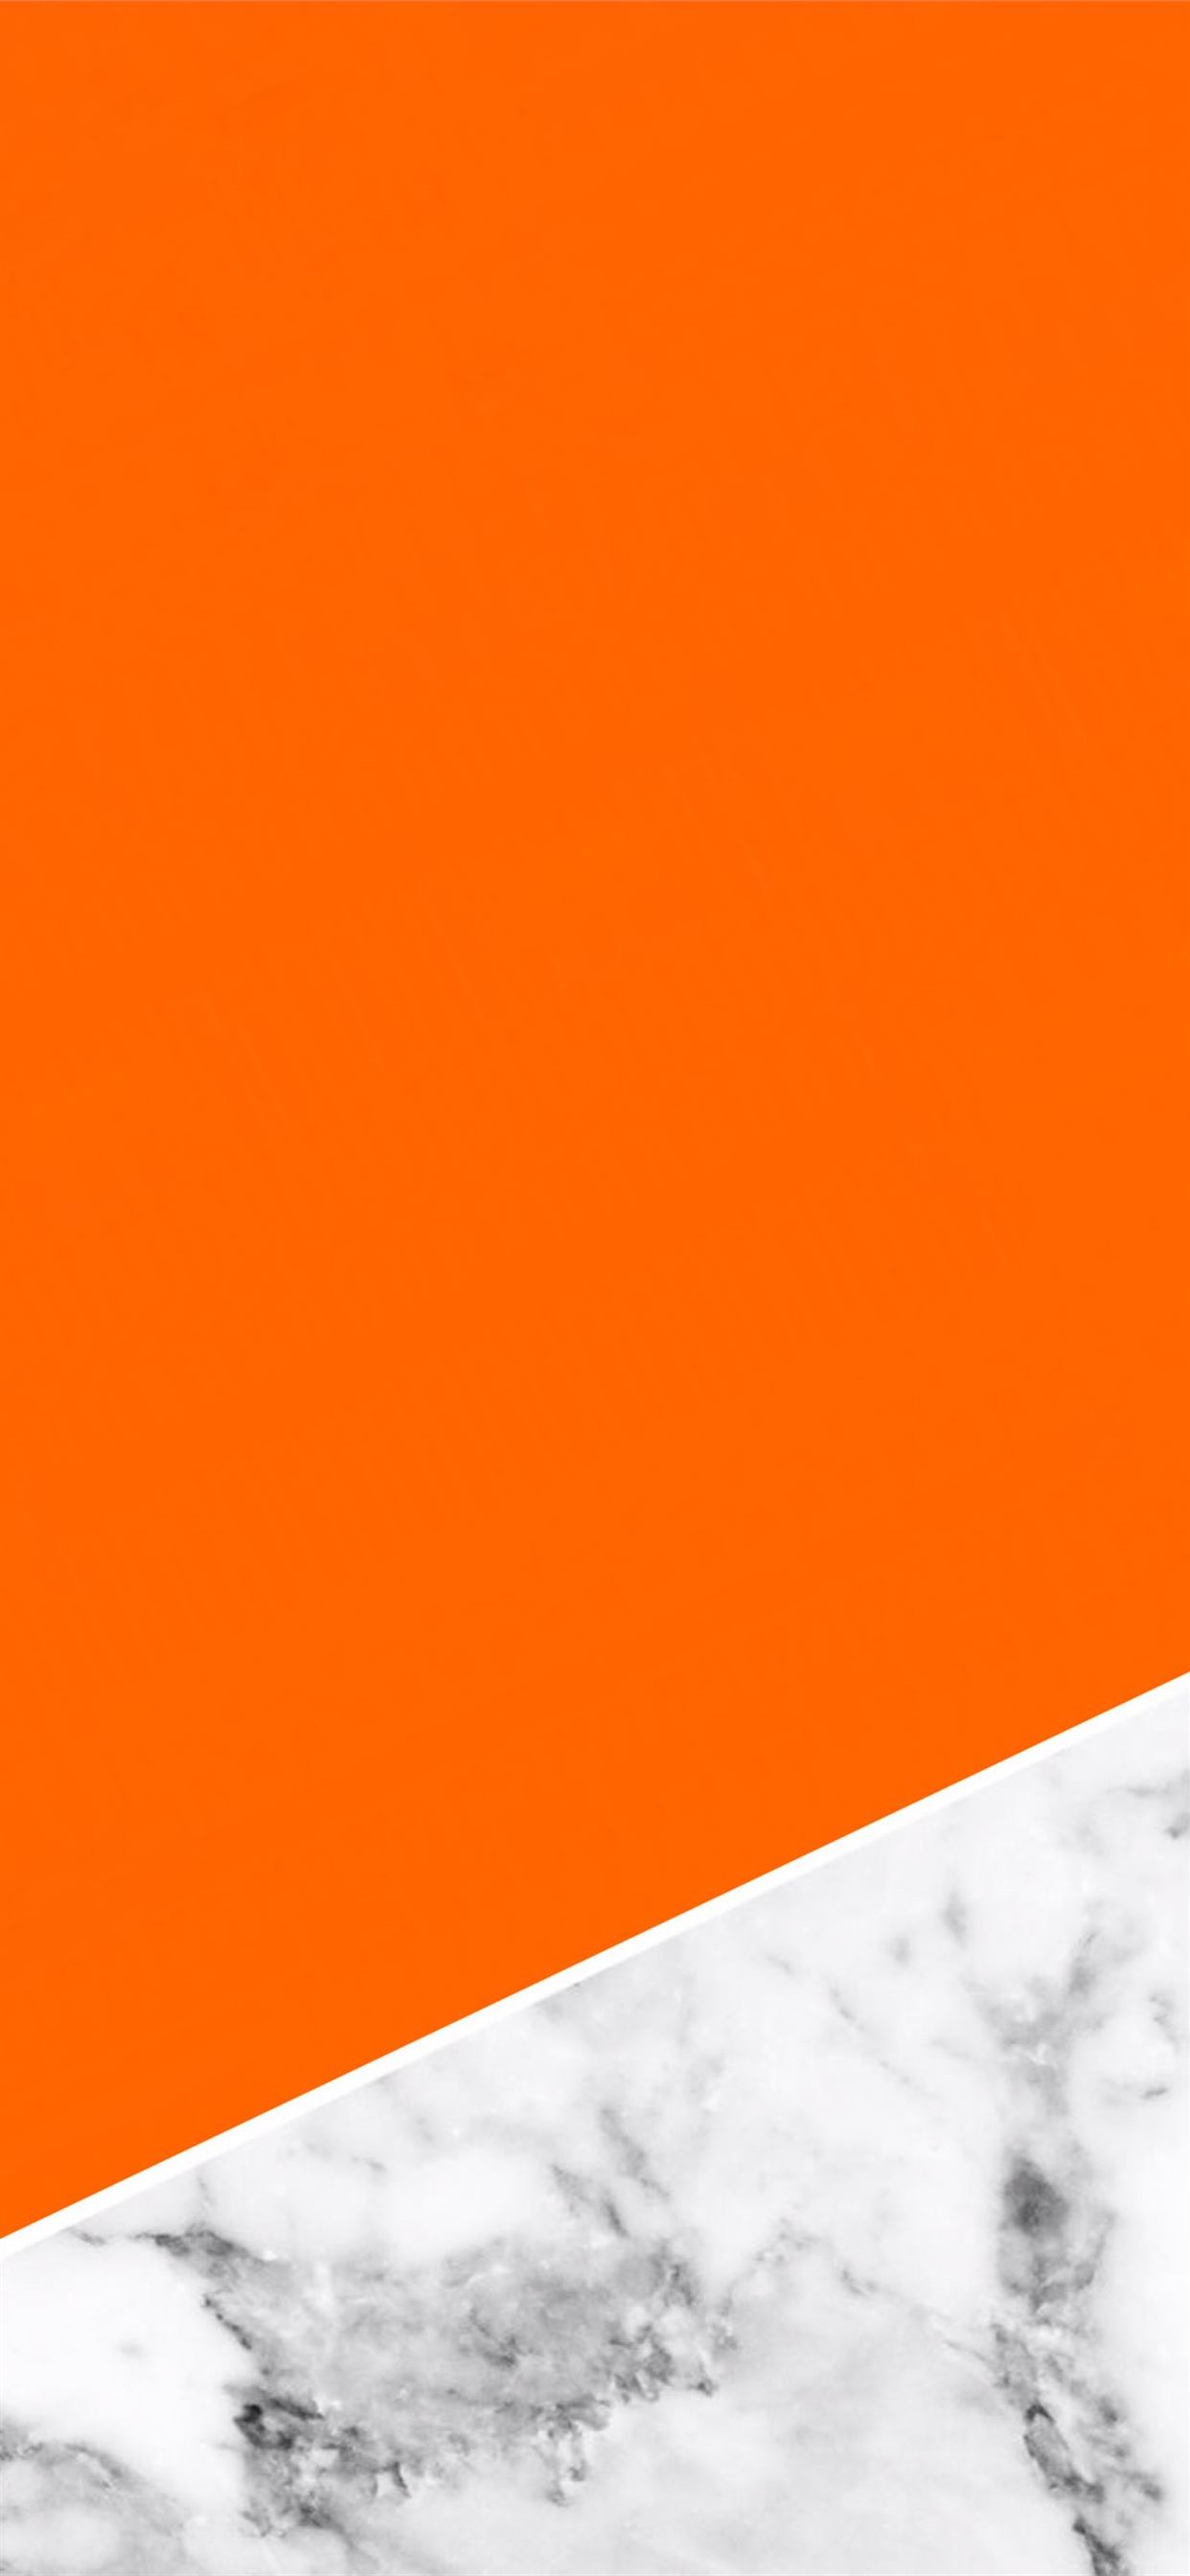 Bạn đang sở hữu một chiếc điện thoại iPhone và đang muốn tìm kiếm một hình nền mới độc đáo cho màn hình của mình? Hãy đến và tải về những bức hình nền Clockwork Orange đẹp mắt với sắc cam đầy phóng khoáng. Bạn sẽ không muốn bỏ lỡ bất kỳ hình ảnh nào trong trang web của chúng tôi.